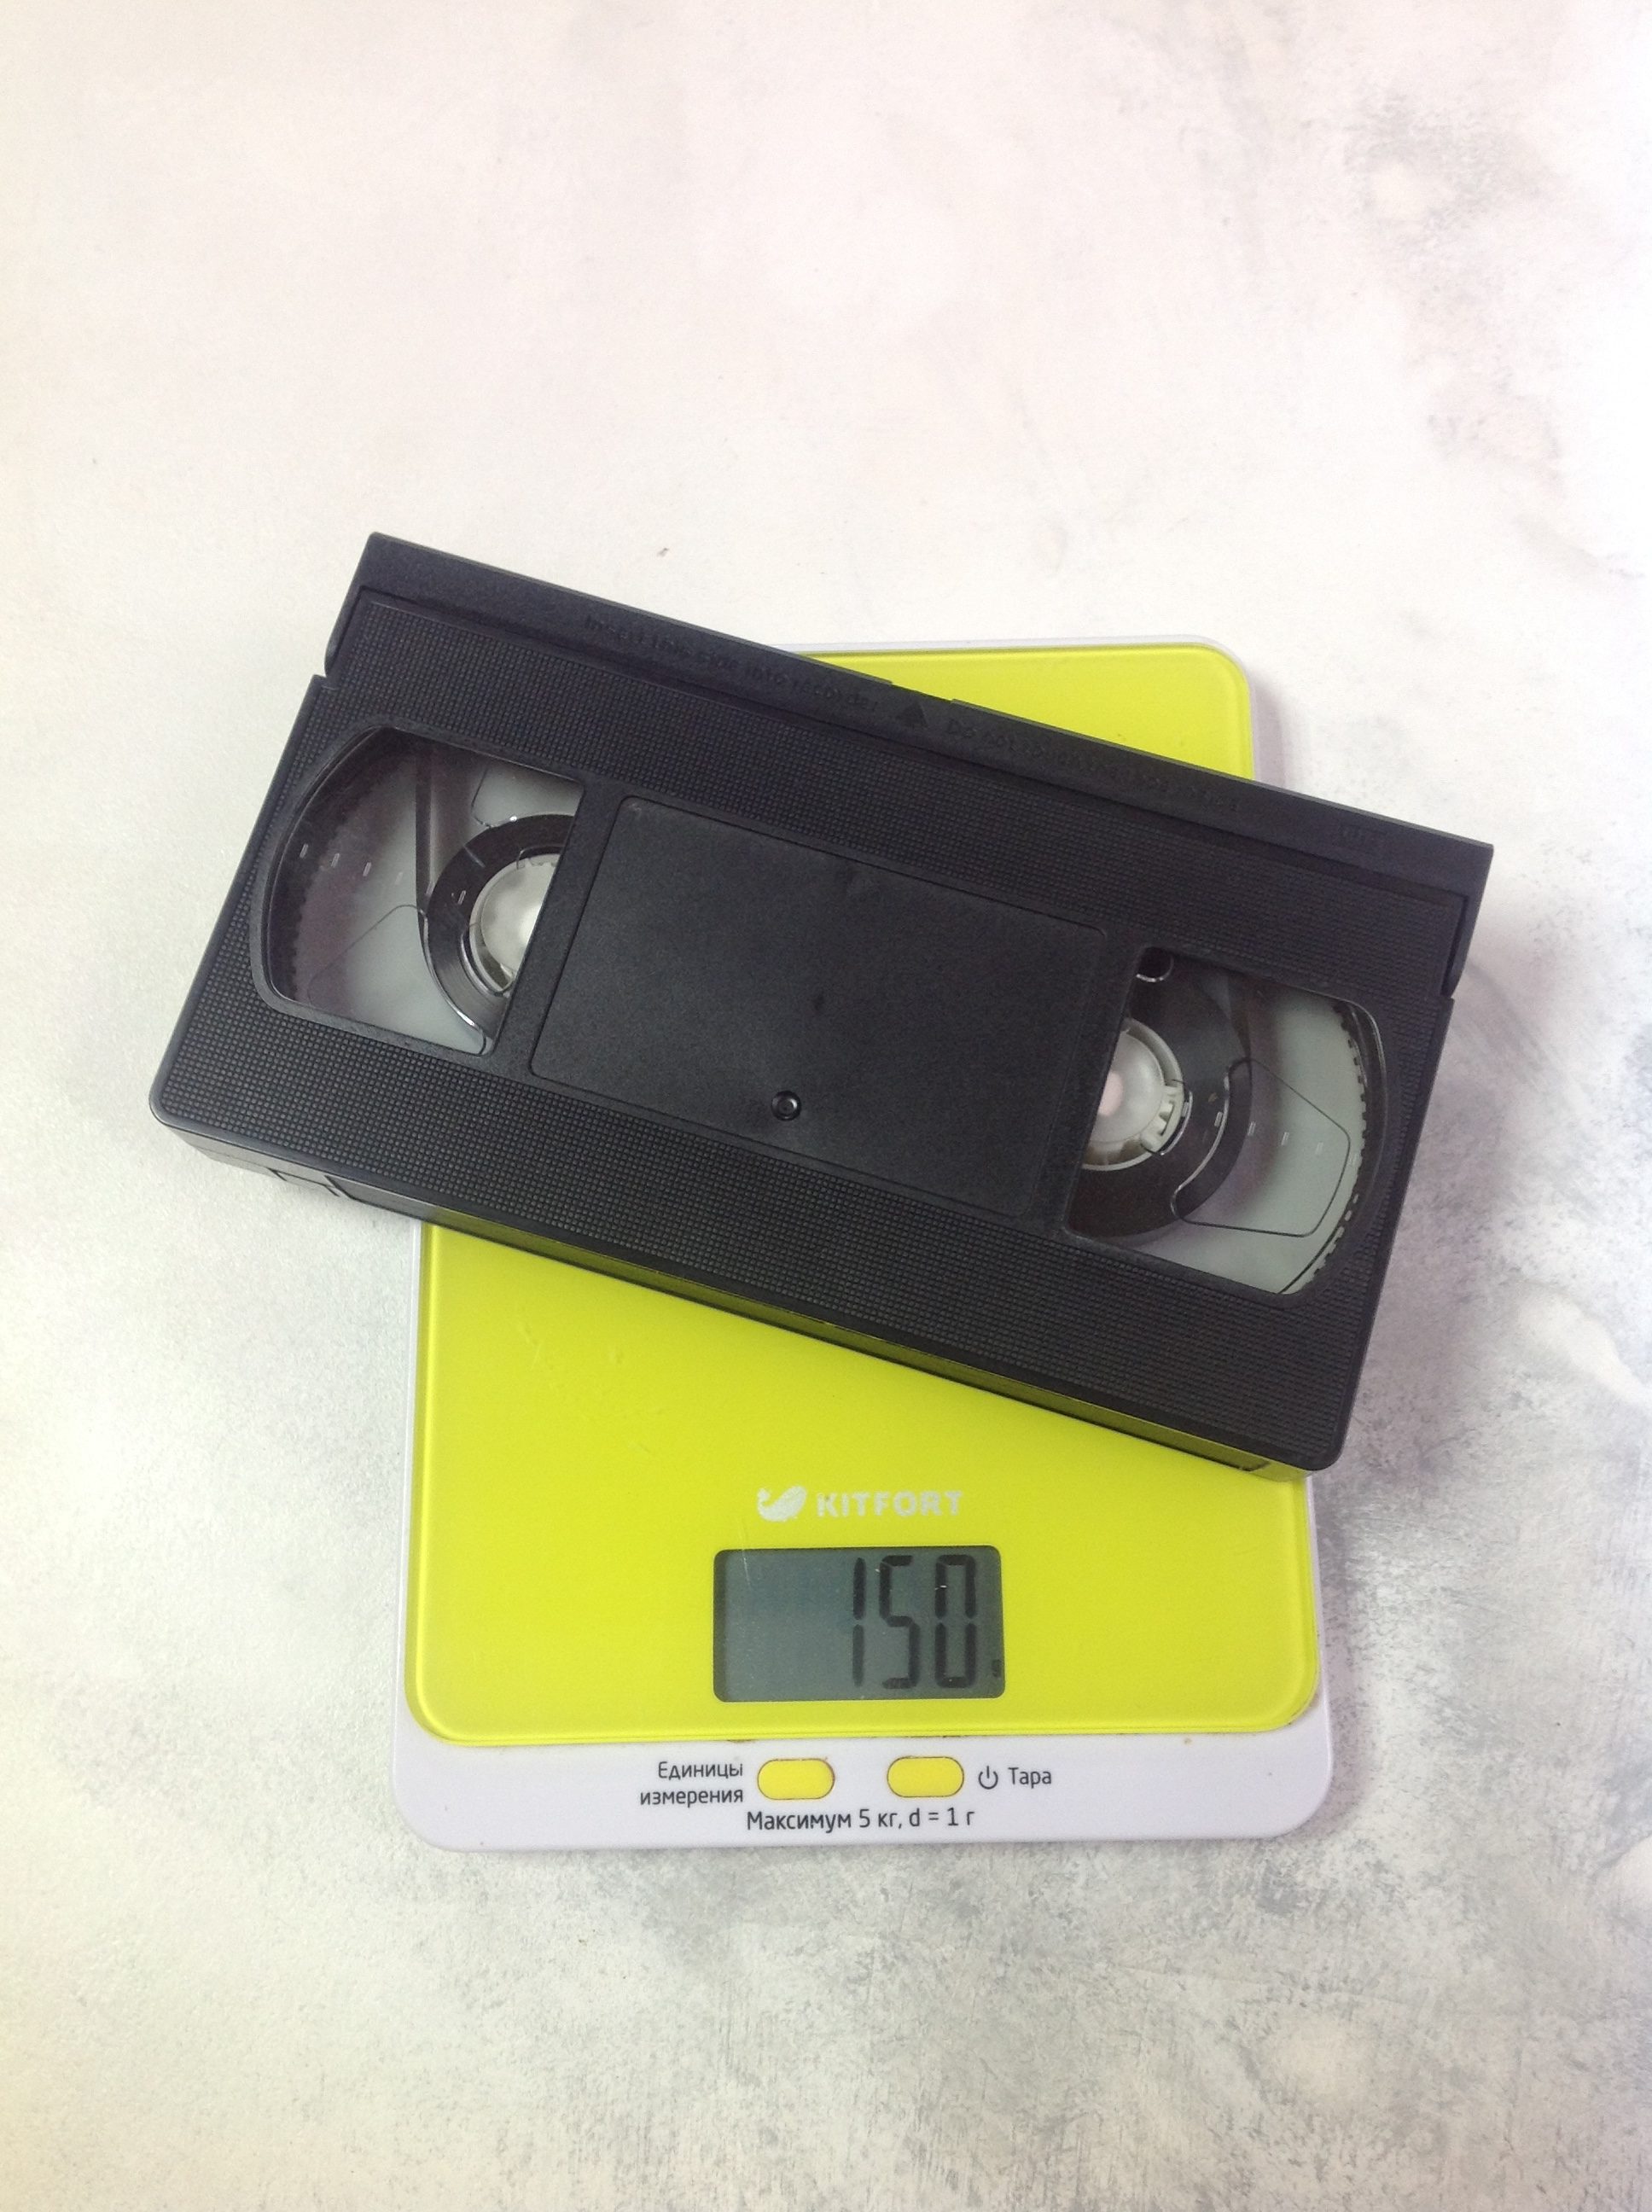 Bir video kasetin ağırlığı ne kadardır?